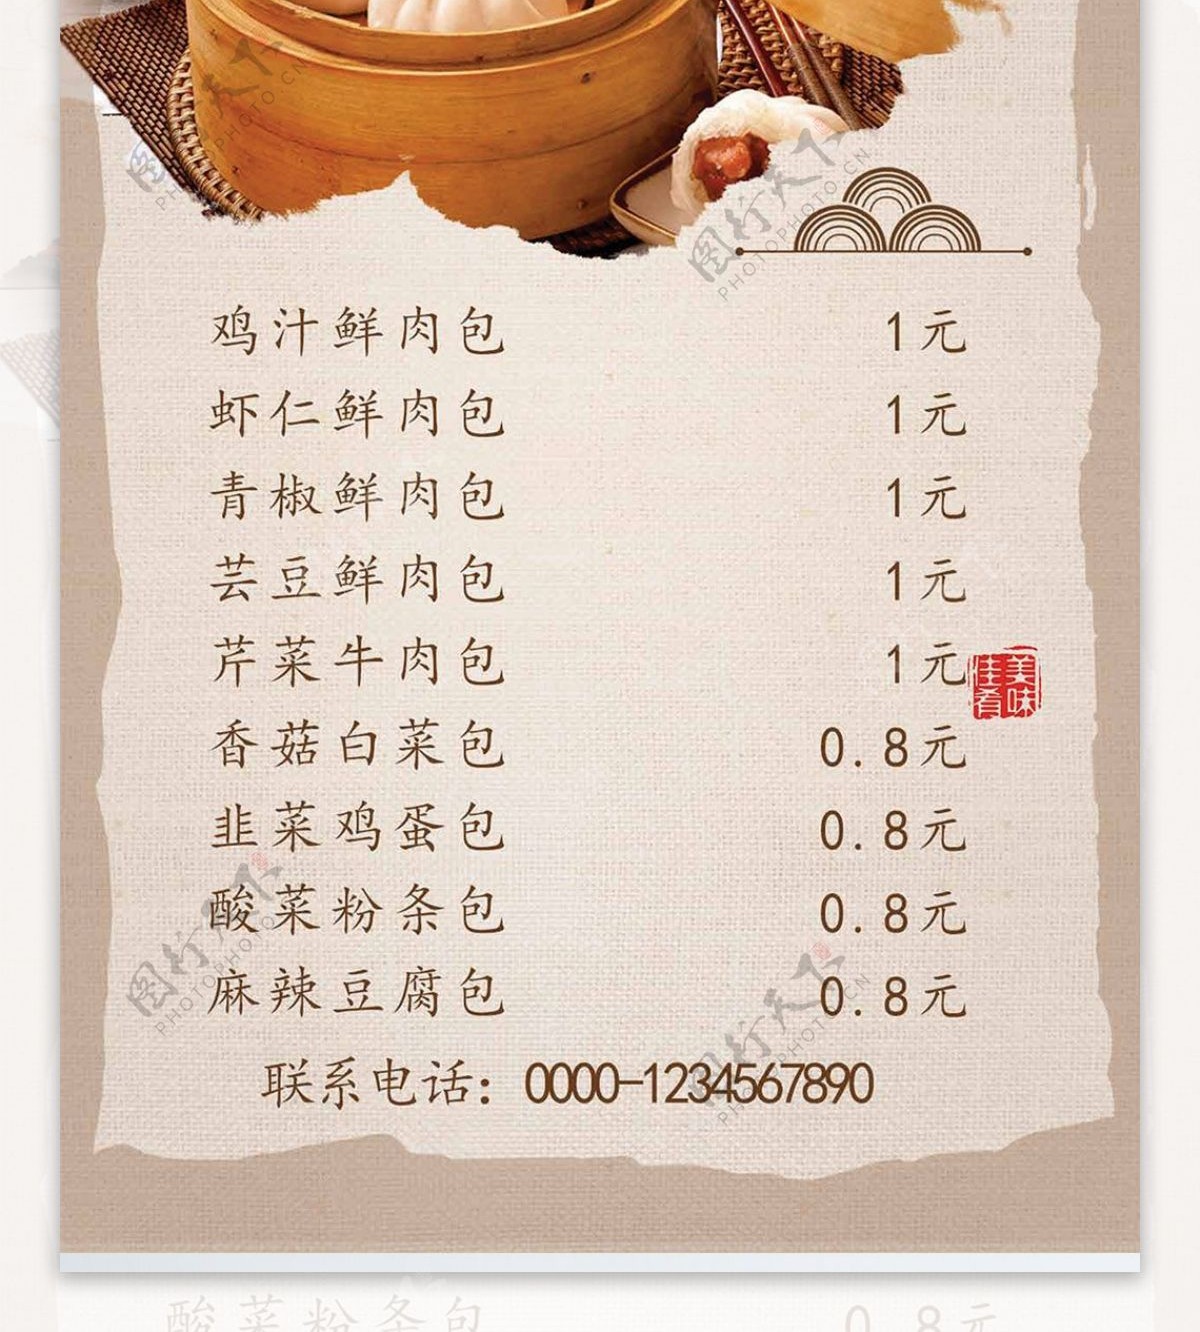 黄色中国风老上海小笼包菜谱设计